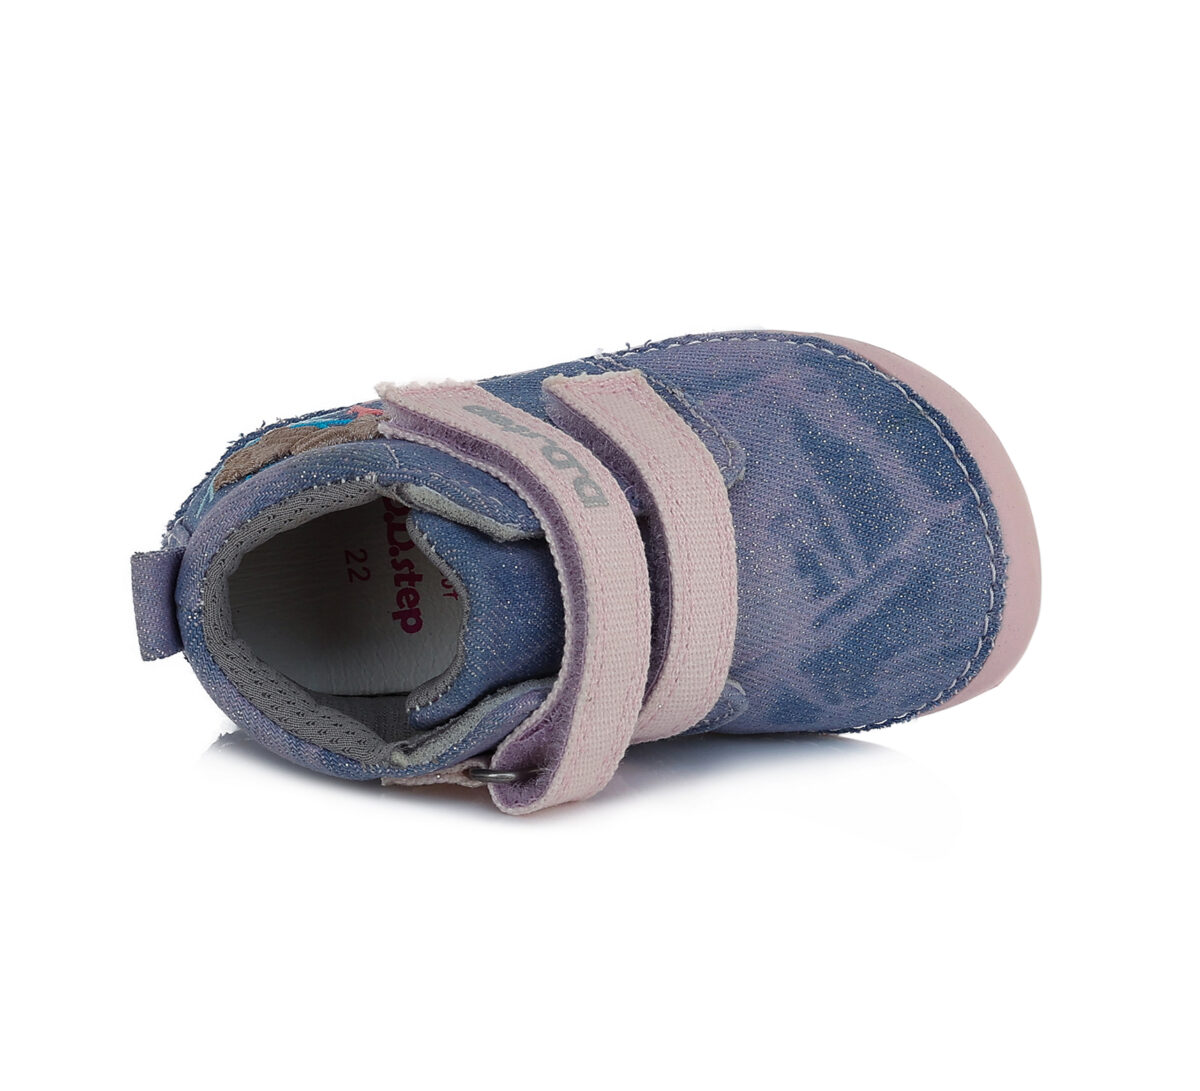 D.D.Step tekstiilist barefoot saapad, Lavender 070 D.D.Step - HellyK - Kvaliteetsed lasteriided, villariided, barefoot jalatsid